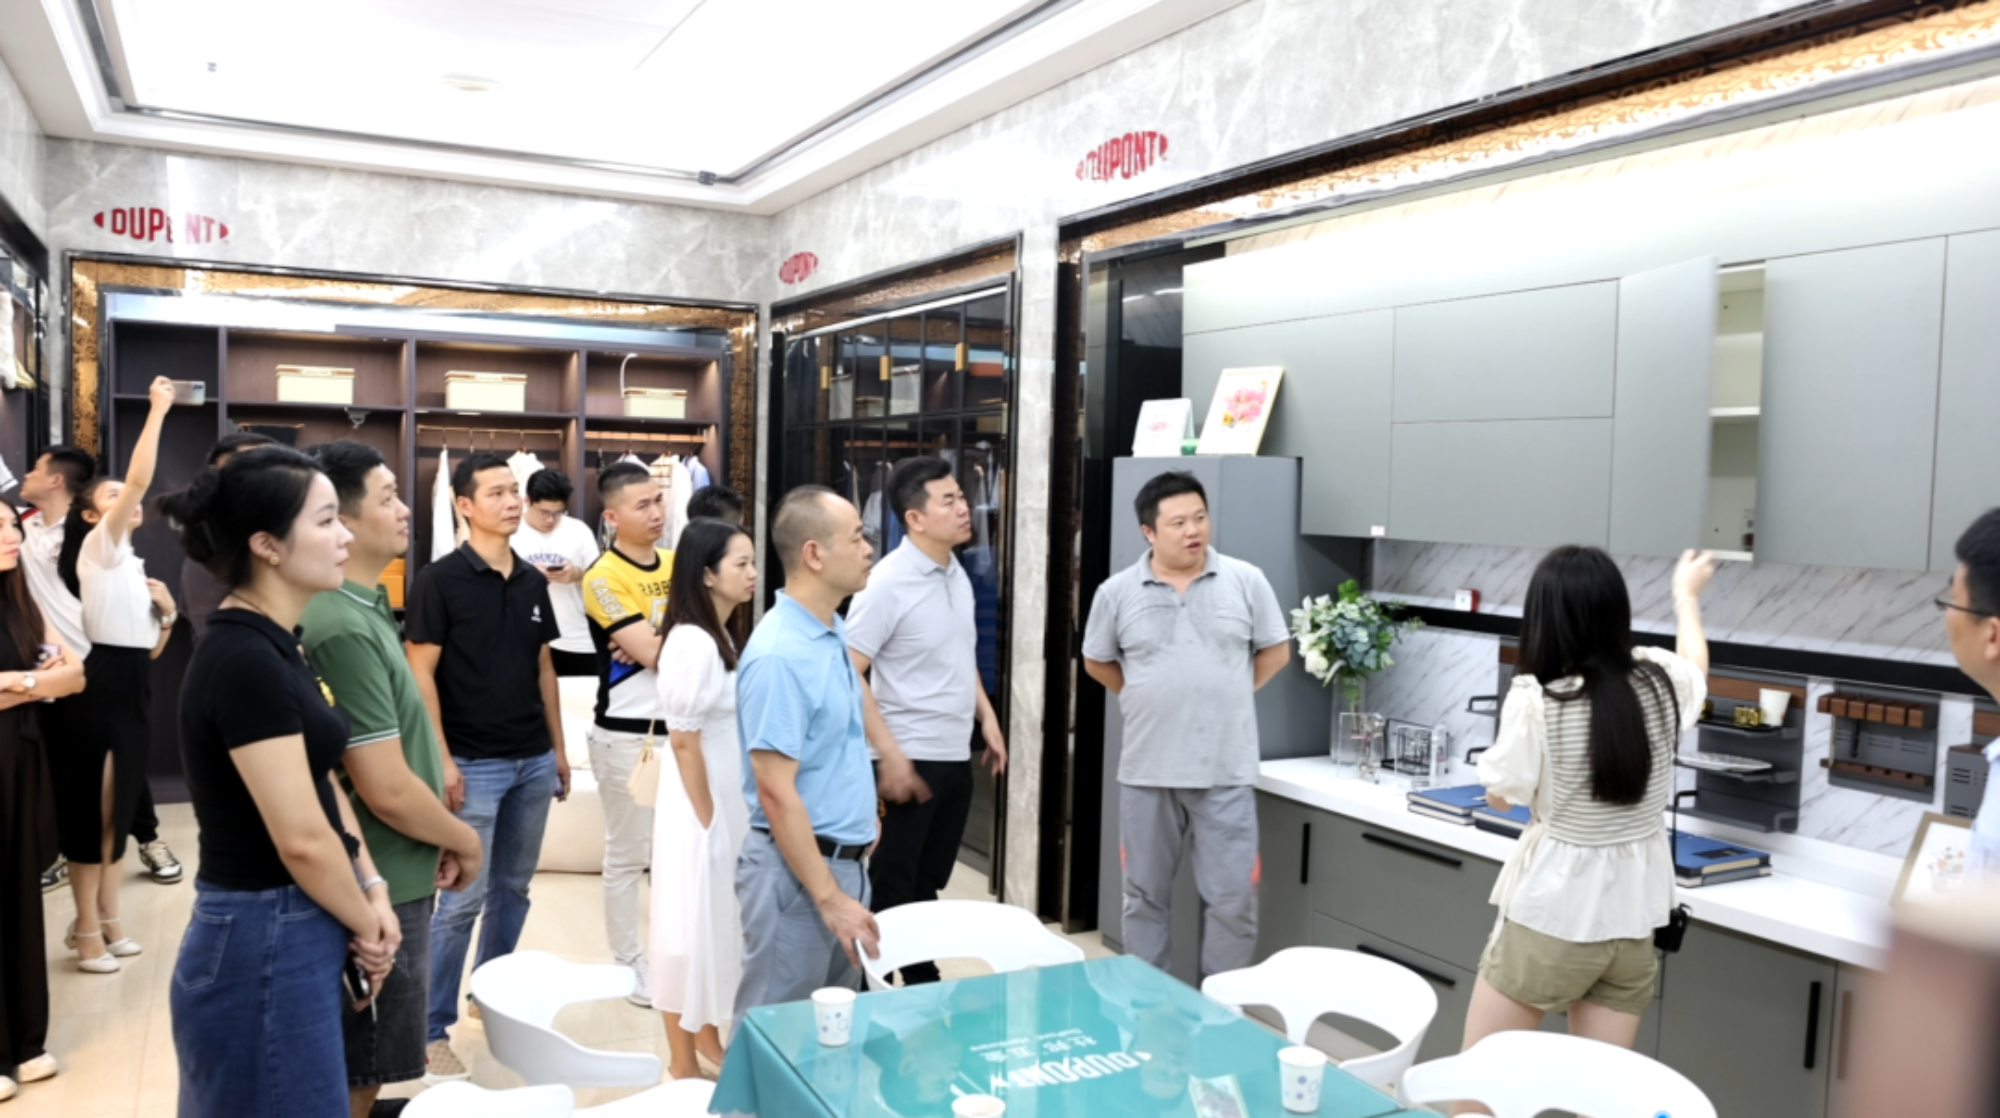 ROEASY Hardware-Informationen | Wir heißen das Inspektions- und Austauschteam des Jugendausschusses der Guangdong Home Building Materials Chamber of Commerce zu einem Besuch und Austausch in unserem Unternehmen herzlich willkommen